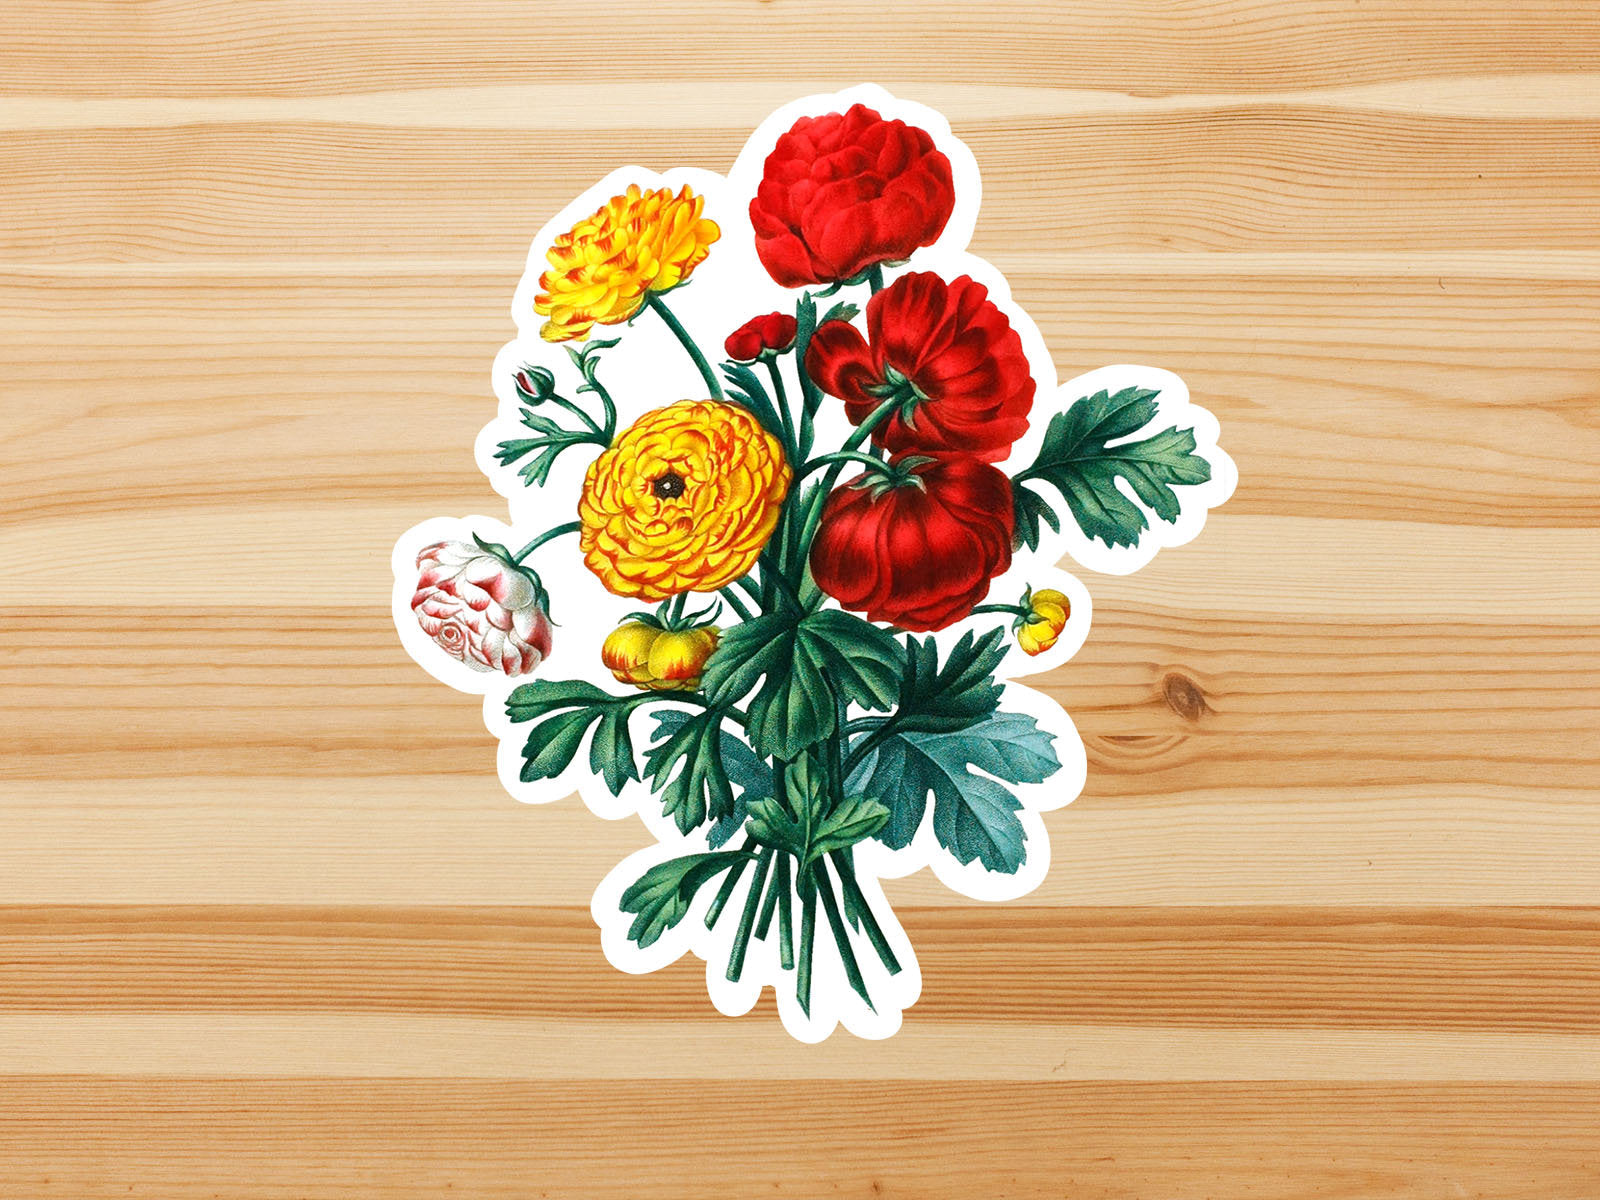 vintage flower bouquet Sticker by YaelleDark